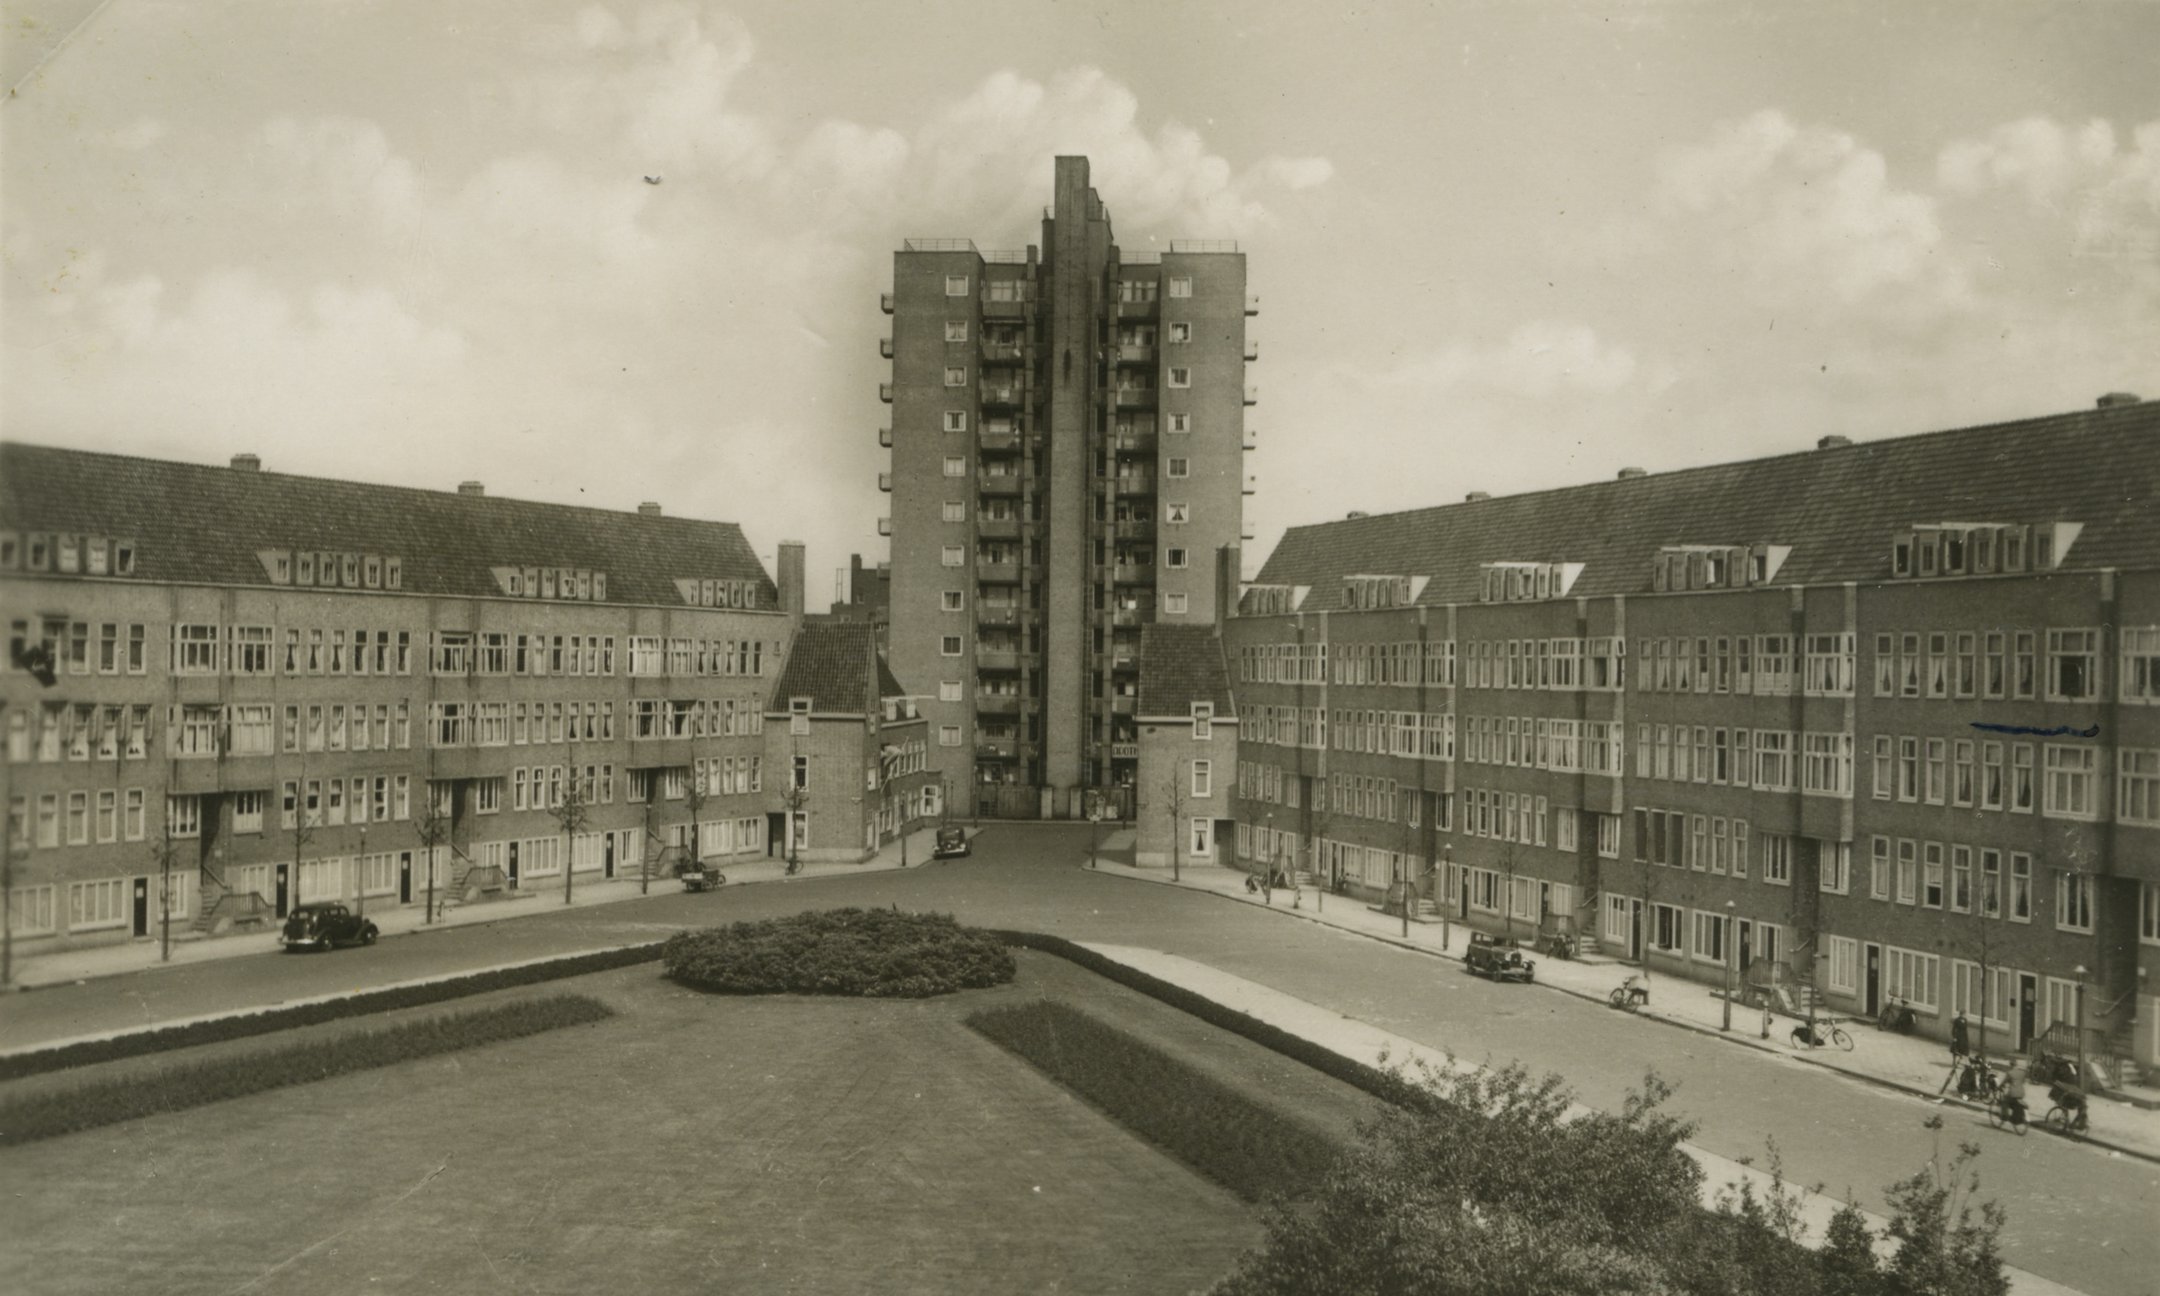 メルウェーデ広場の絵葉書。1930年代のもの。フランク家が住むところにアンネがつけた印がある（右端の中央辺り）。